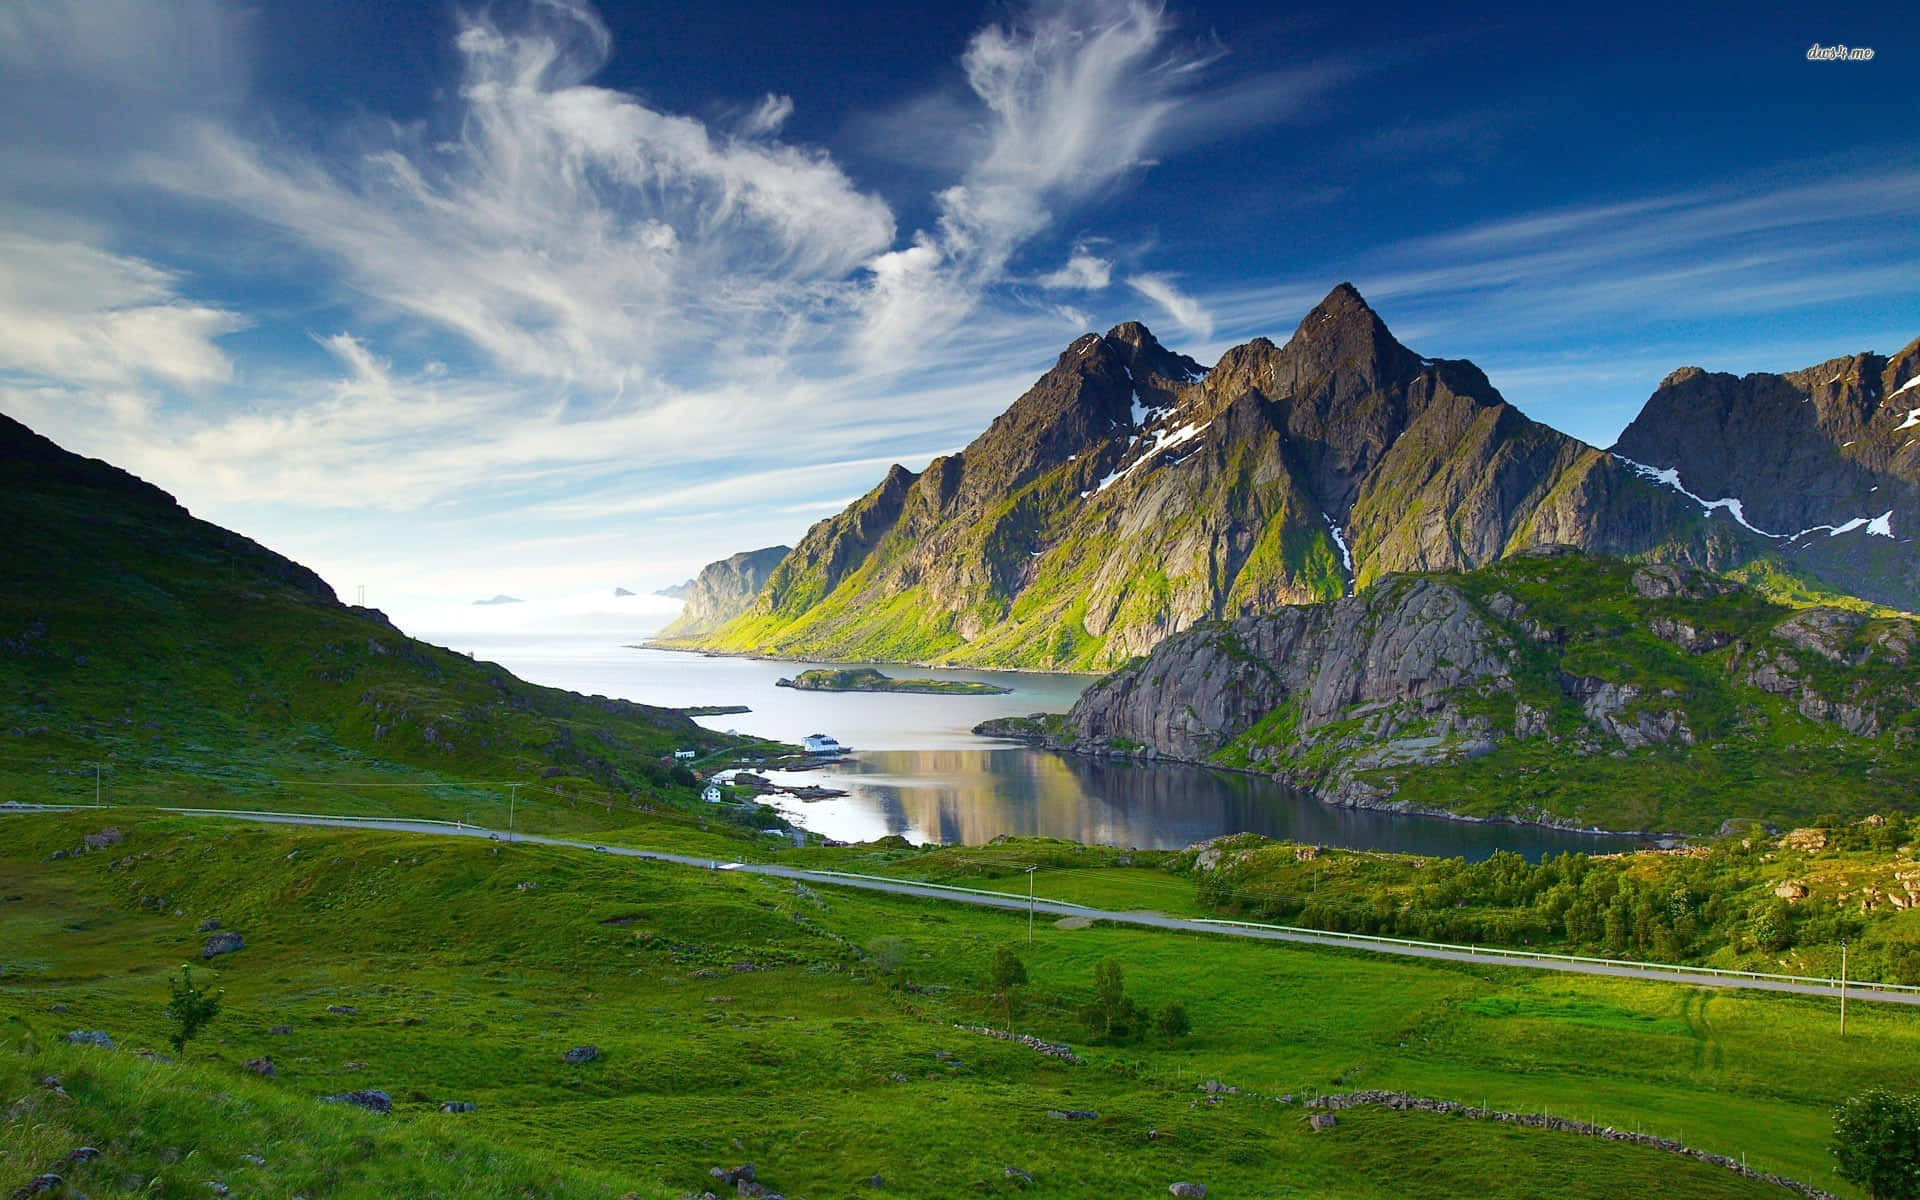 Tag med denne dramatiske udsigt af majestætiske bjerge i dette sceniske landskab. Wallpaper